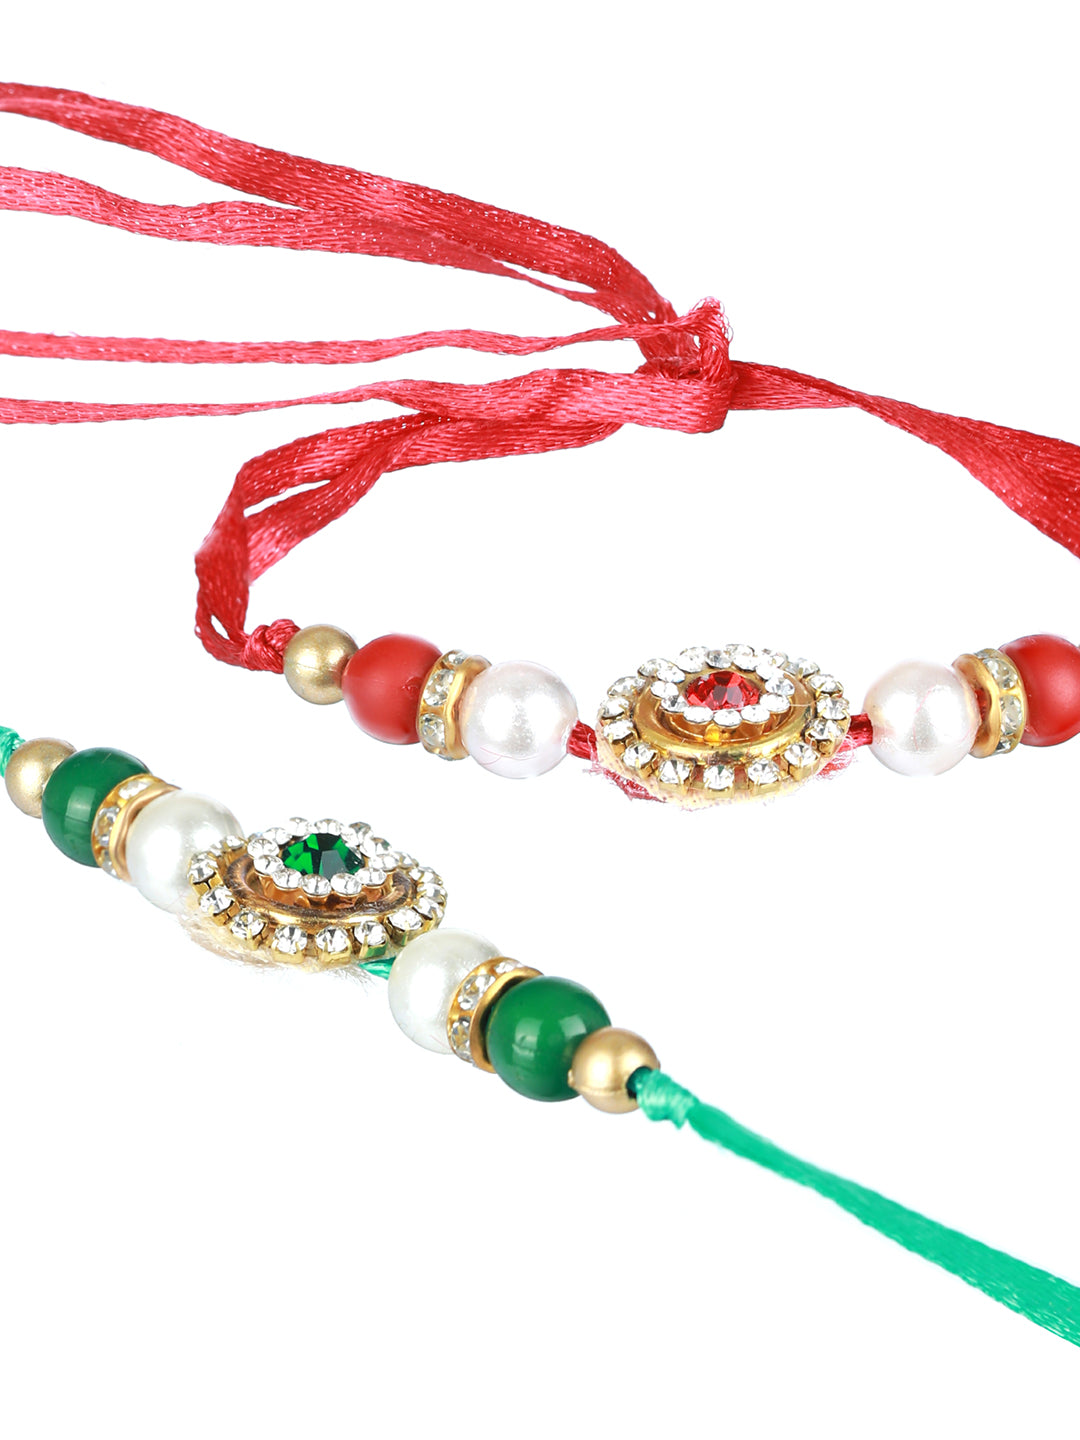 Priyaasi Studded Red & Green Floral Rakhi (Set of 2)